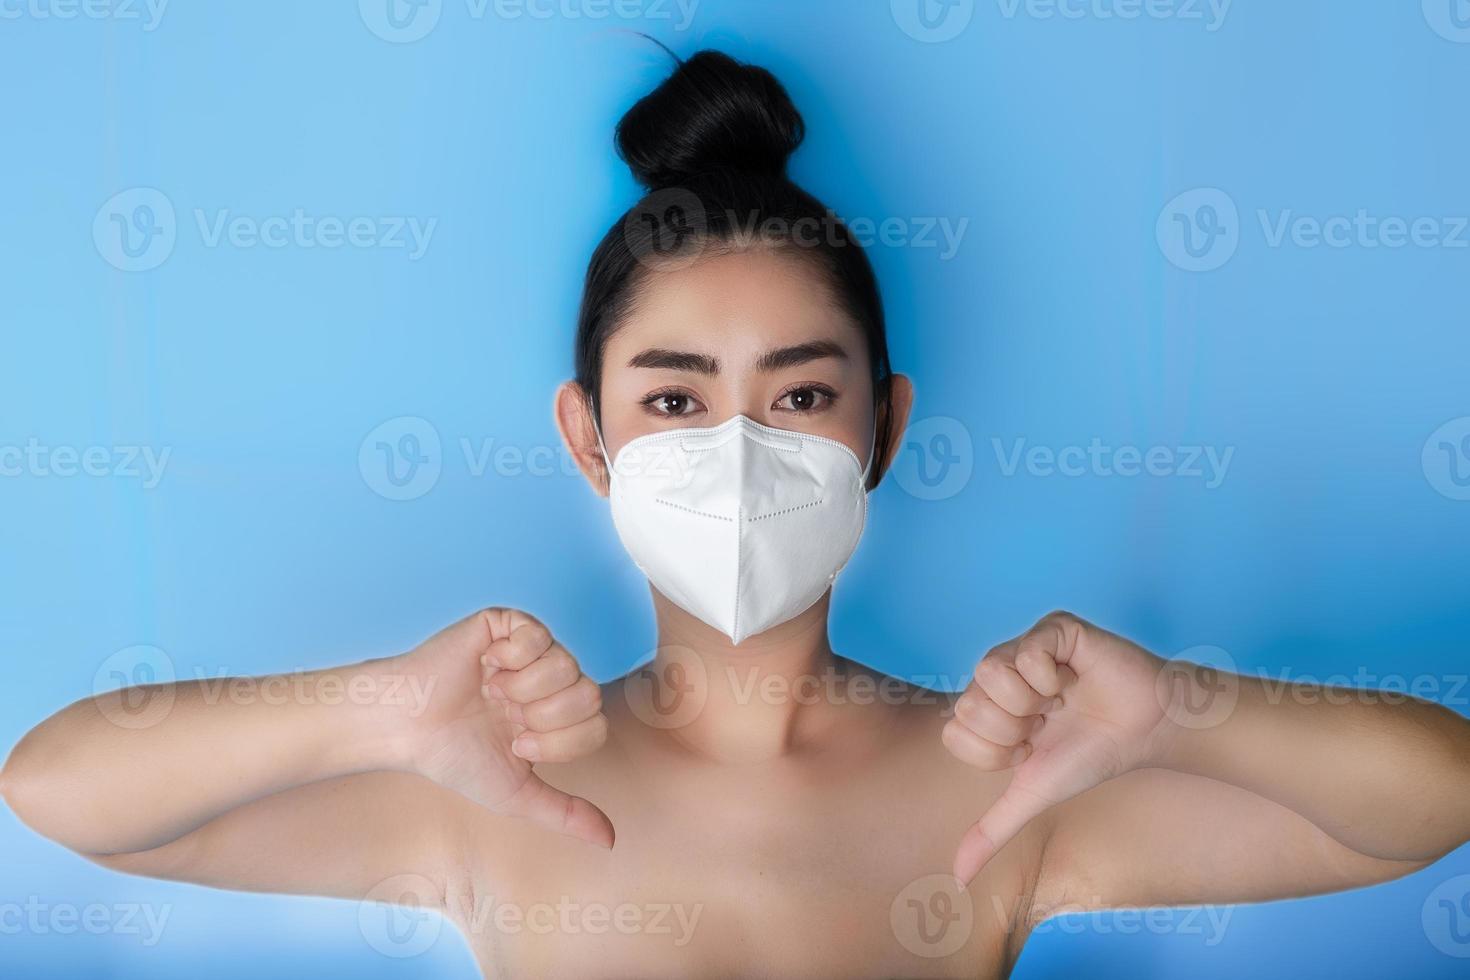 närbild av en kvinna som tar på sig en respirator n95-mask för att skydda mot luftburna luftvägssjukdomar som influensa covid-19 corona pm2.5 damm och smog, kvinnlig gest med tummen ner med handen foto